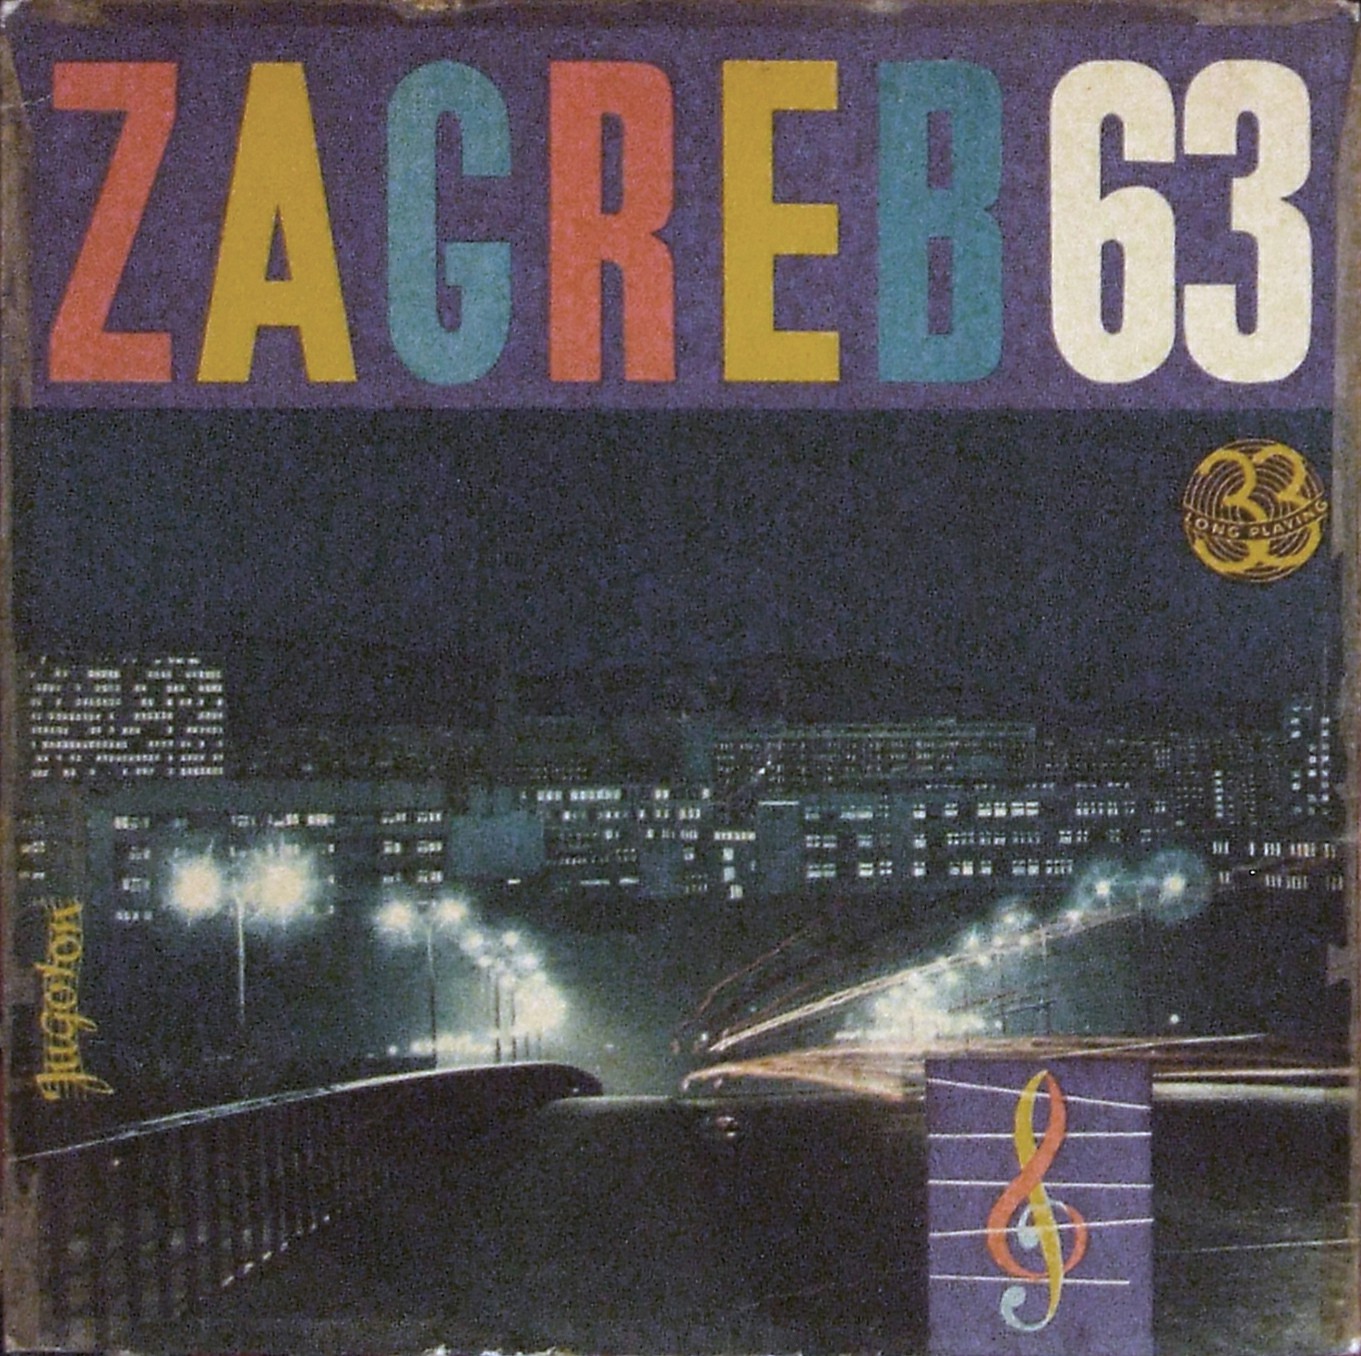 Zagreb 63 2 a